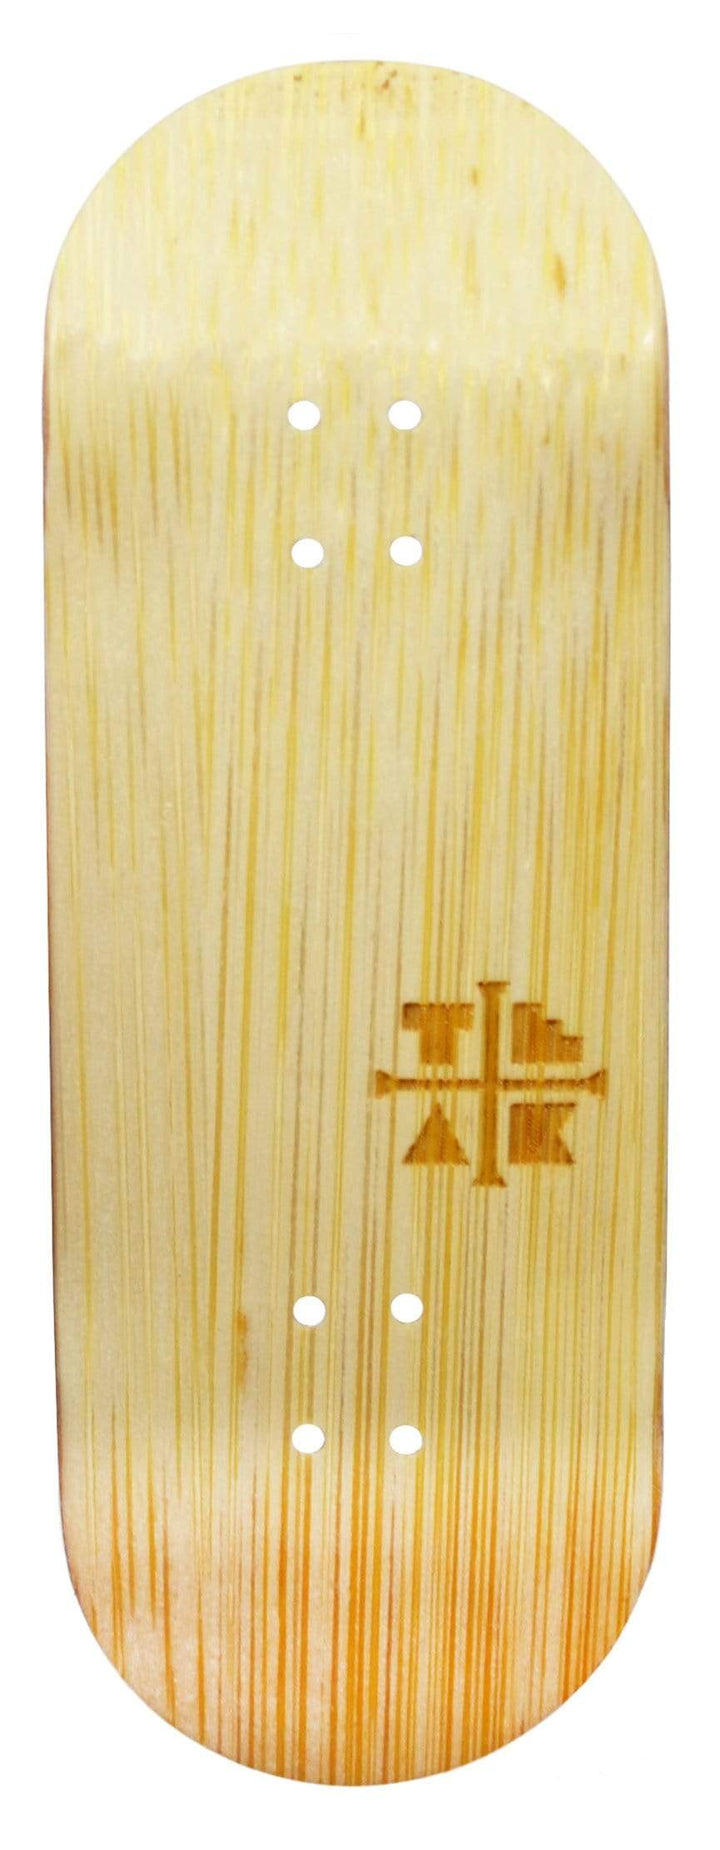 Teak Tuning PROlific Wooden Fingerboard Deck, "Bamboo Samurai" - 34mm x 97mm